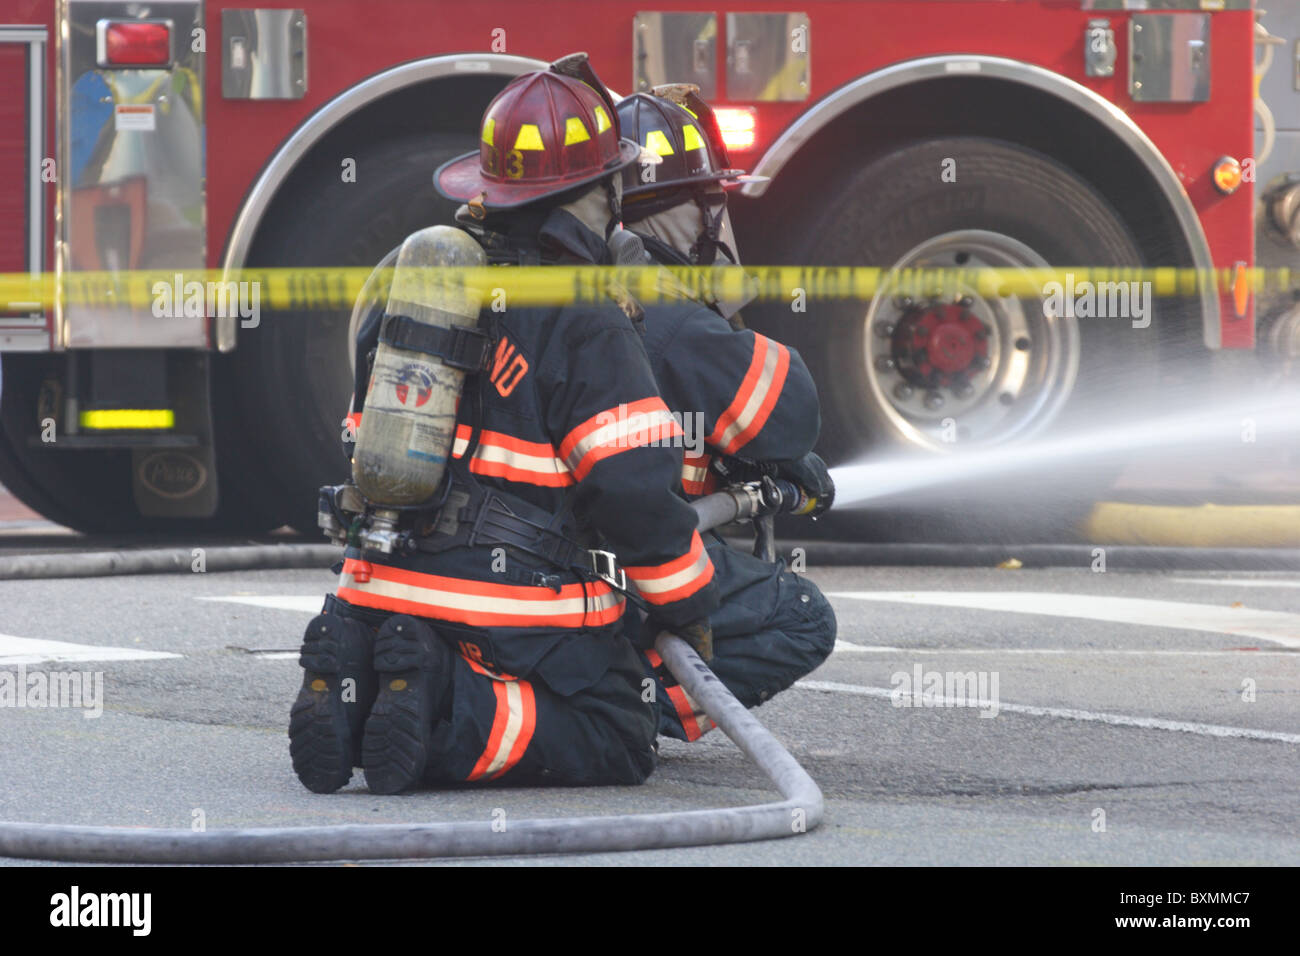 Pompiers lutter contre l'incendie et d'explosion électrique souterrain à la Banque d'Amérique, Richmond, Virginie, 2010 Banque D'Images